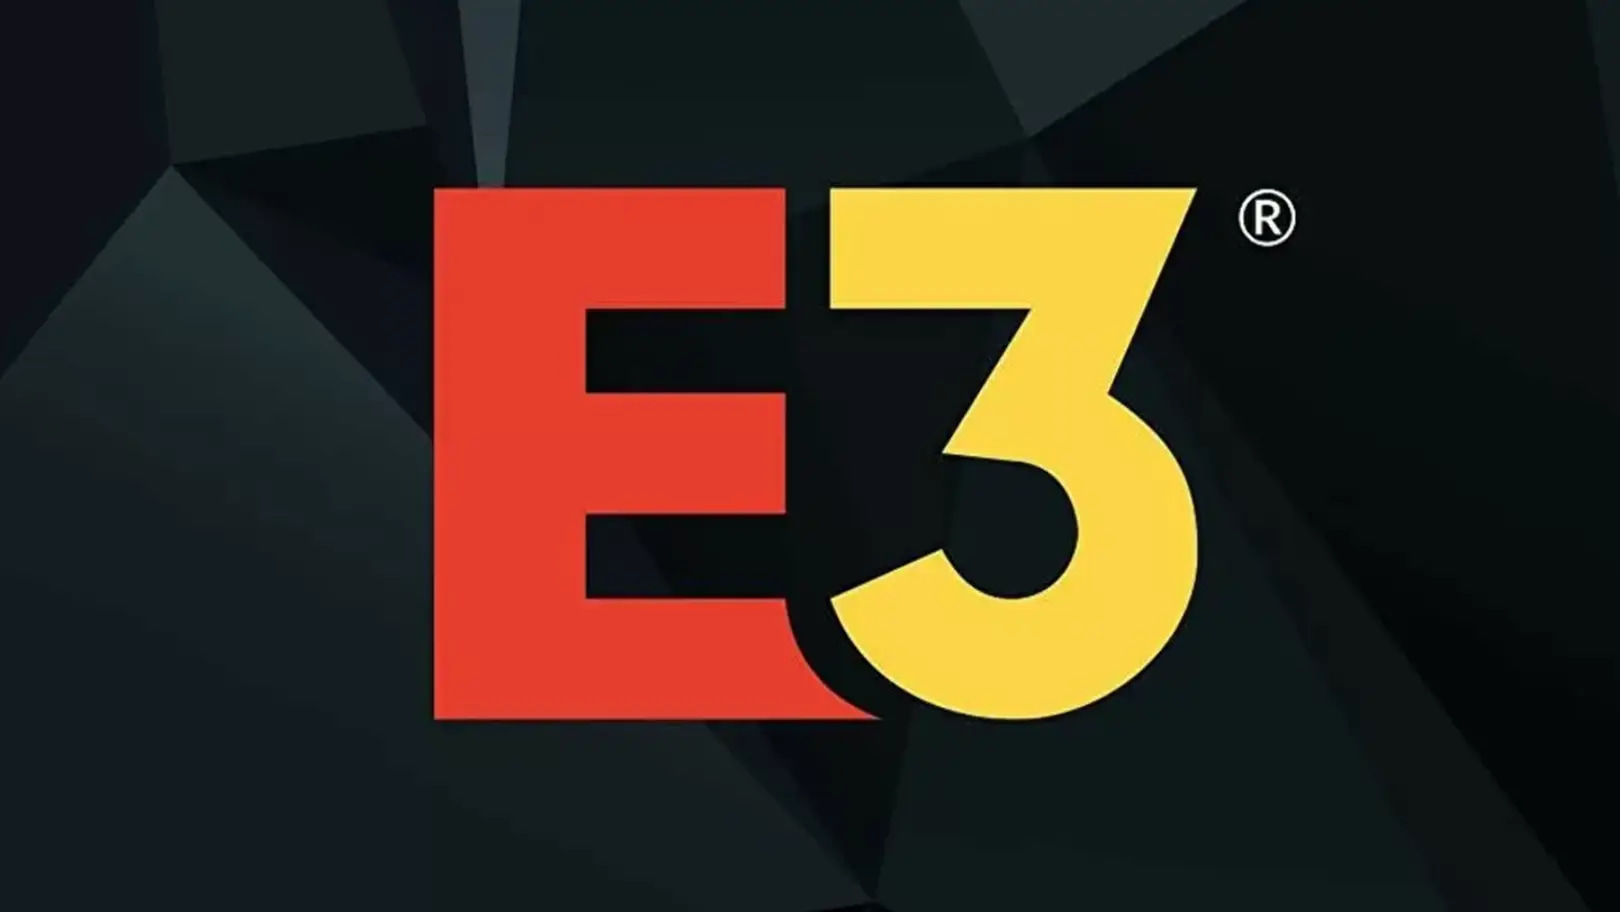 Os 10 jogos que não estarão na E3 2016